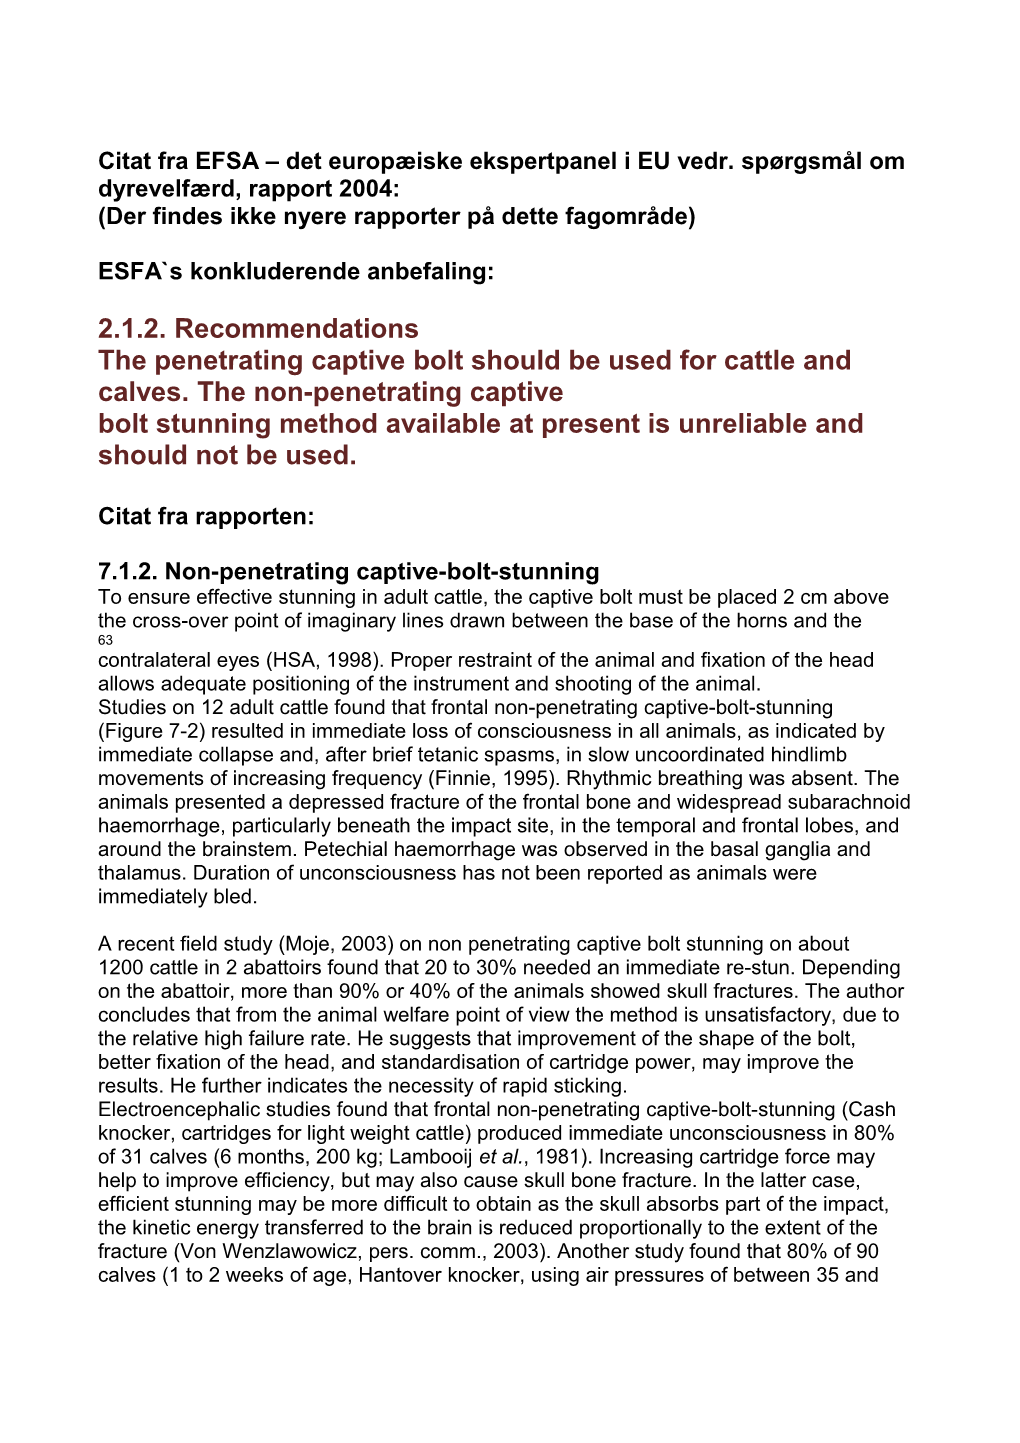 Citat Fra EFSA Det Europæiske Ekspertpanel I EU Vedr. Spørgsmål Om Dyrevelfærd, Rapport 2004